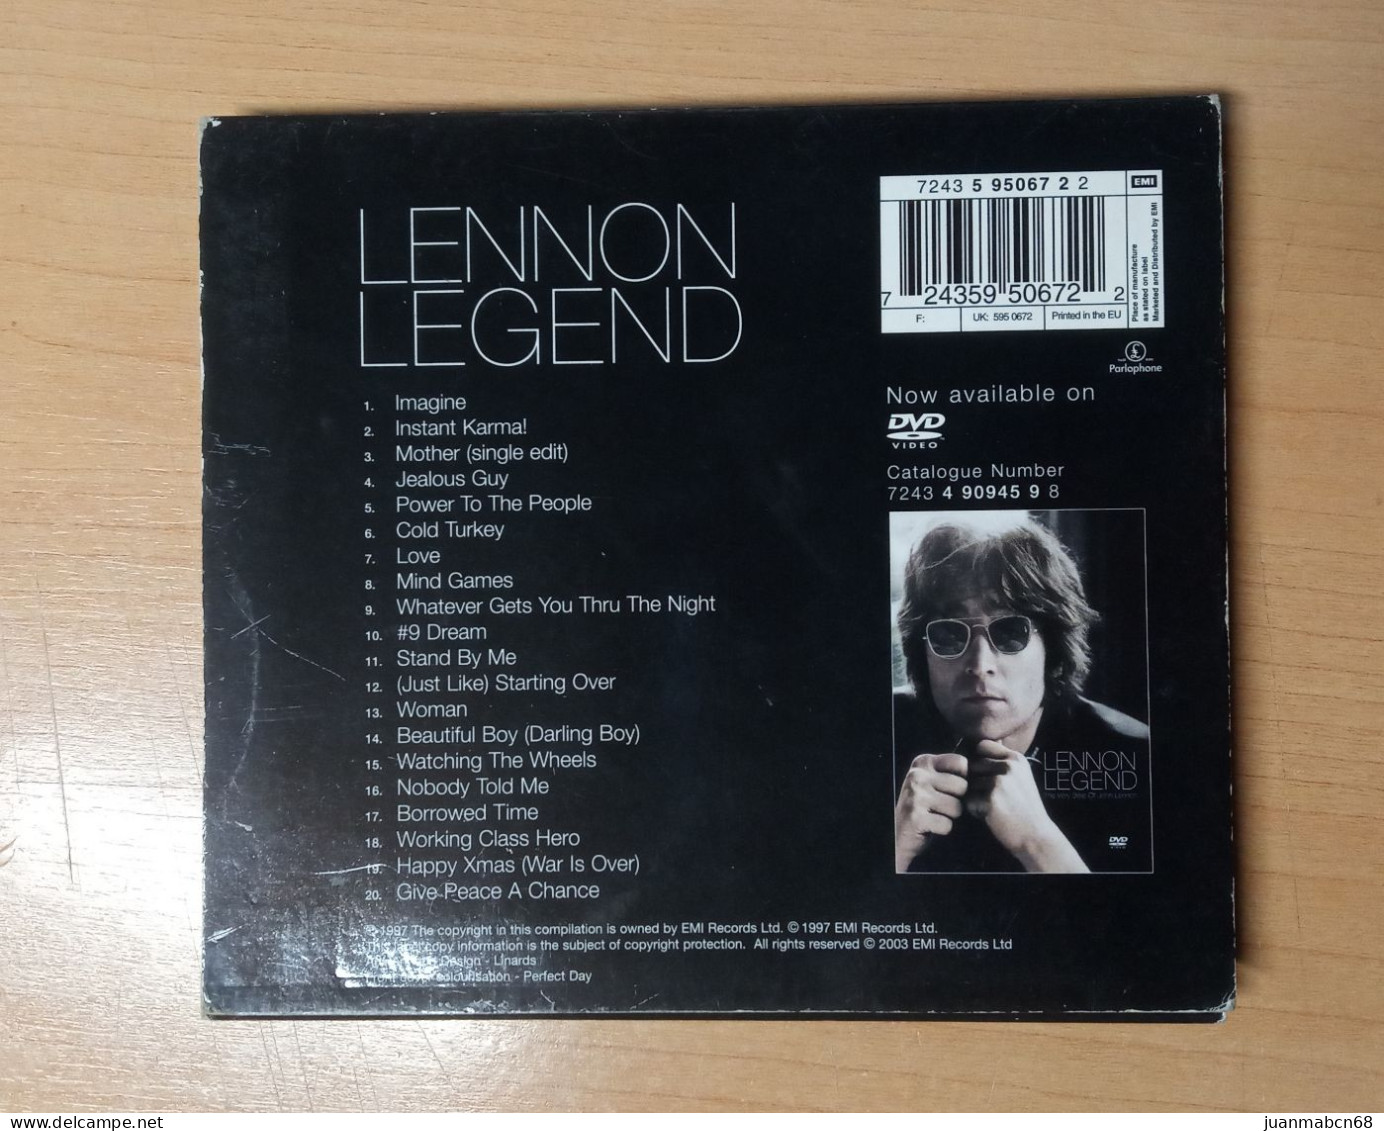 John Lennon -”legend” The Very Best Of John Lennon - Rock